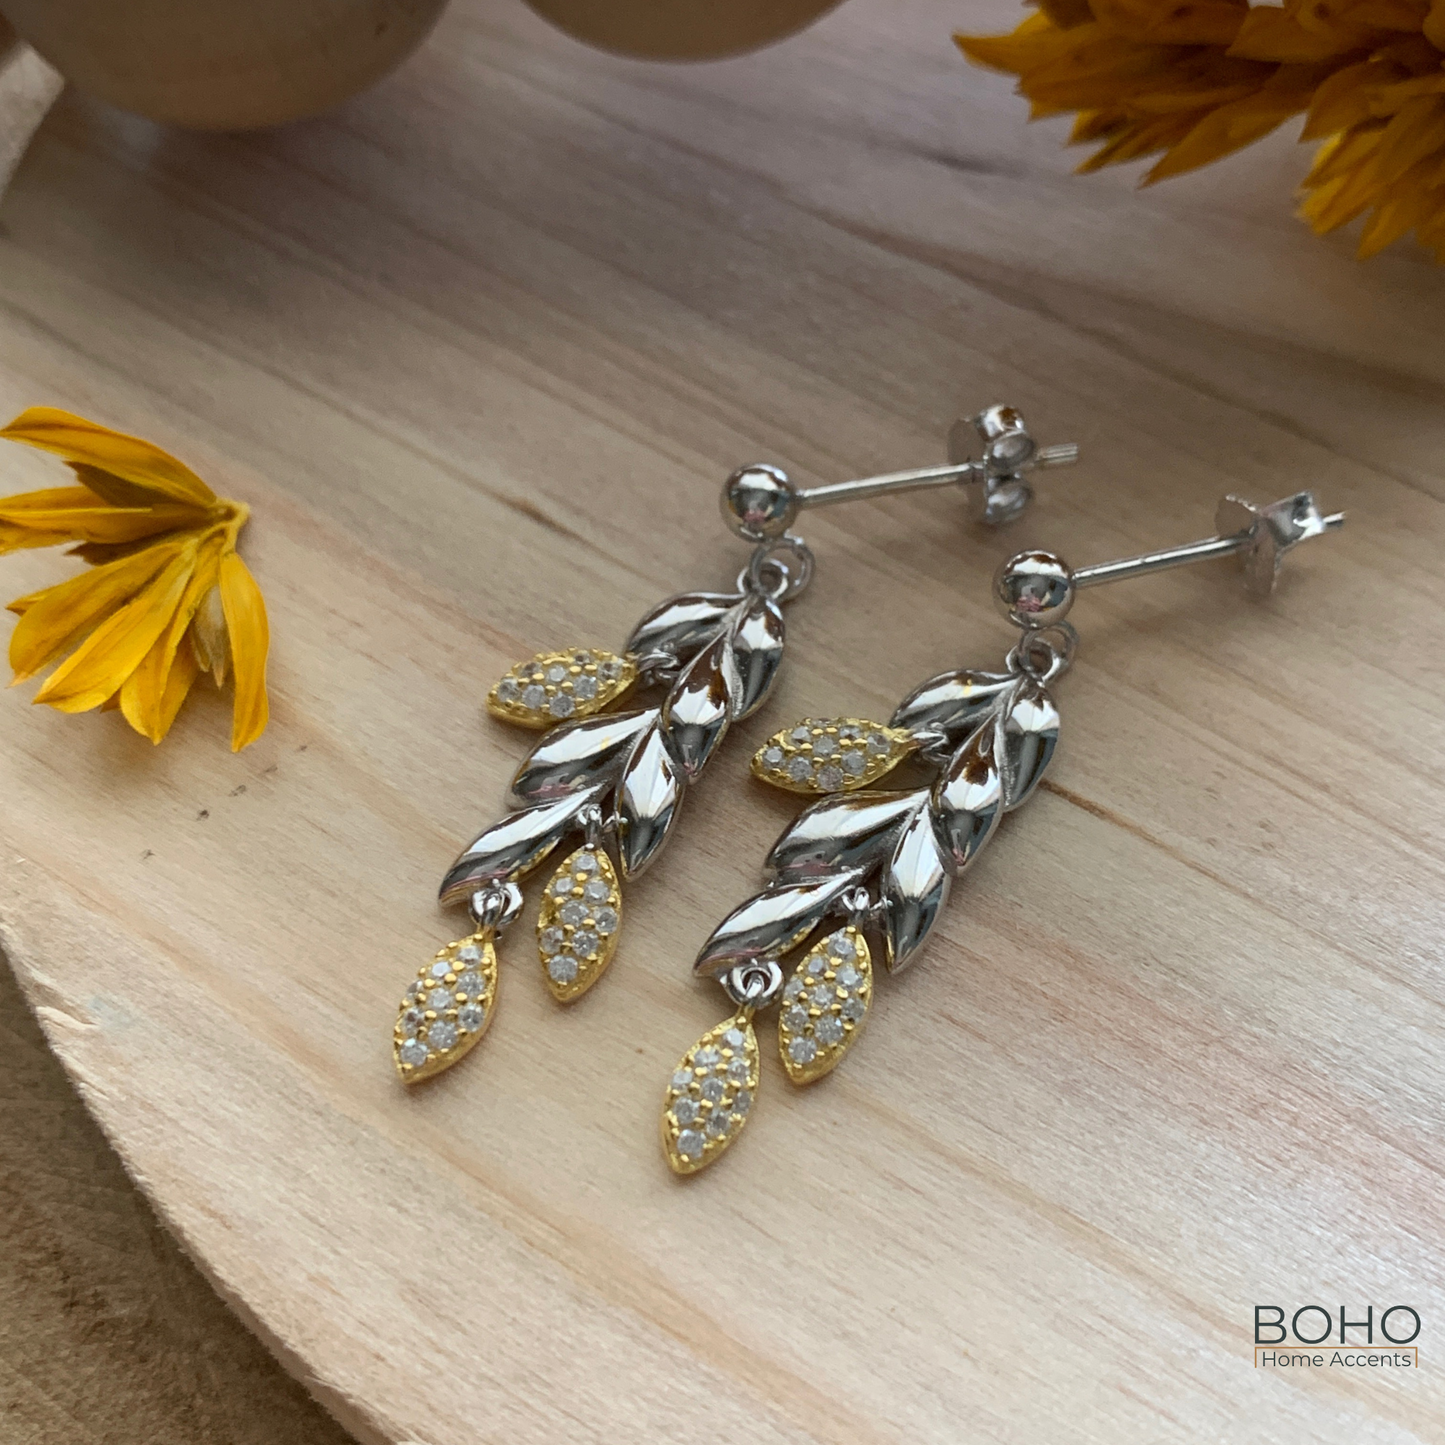 Grain of Sunshine - 925 Sterling Silver Earrings, 1 inch, Zircon Stones earrings | Boho Home Accents